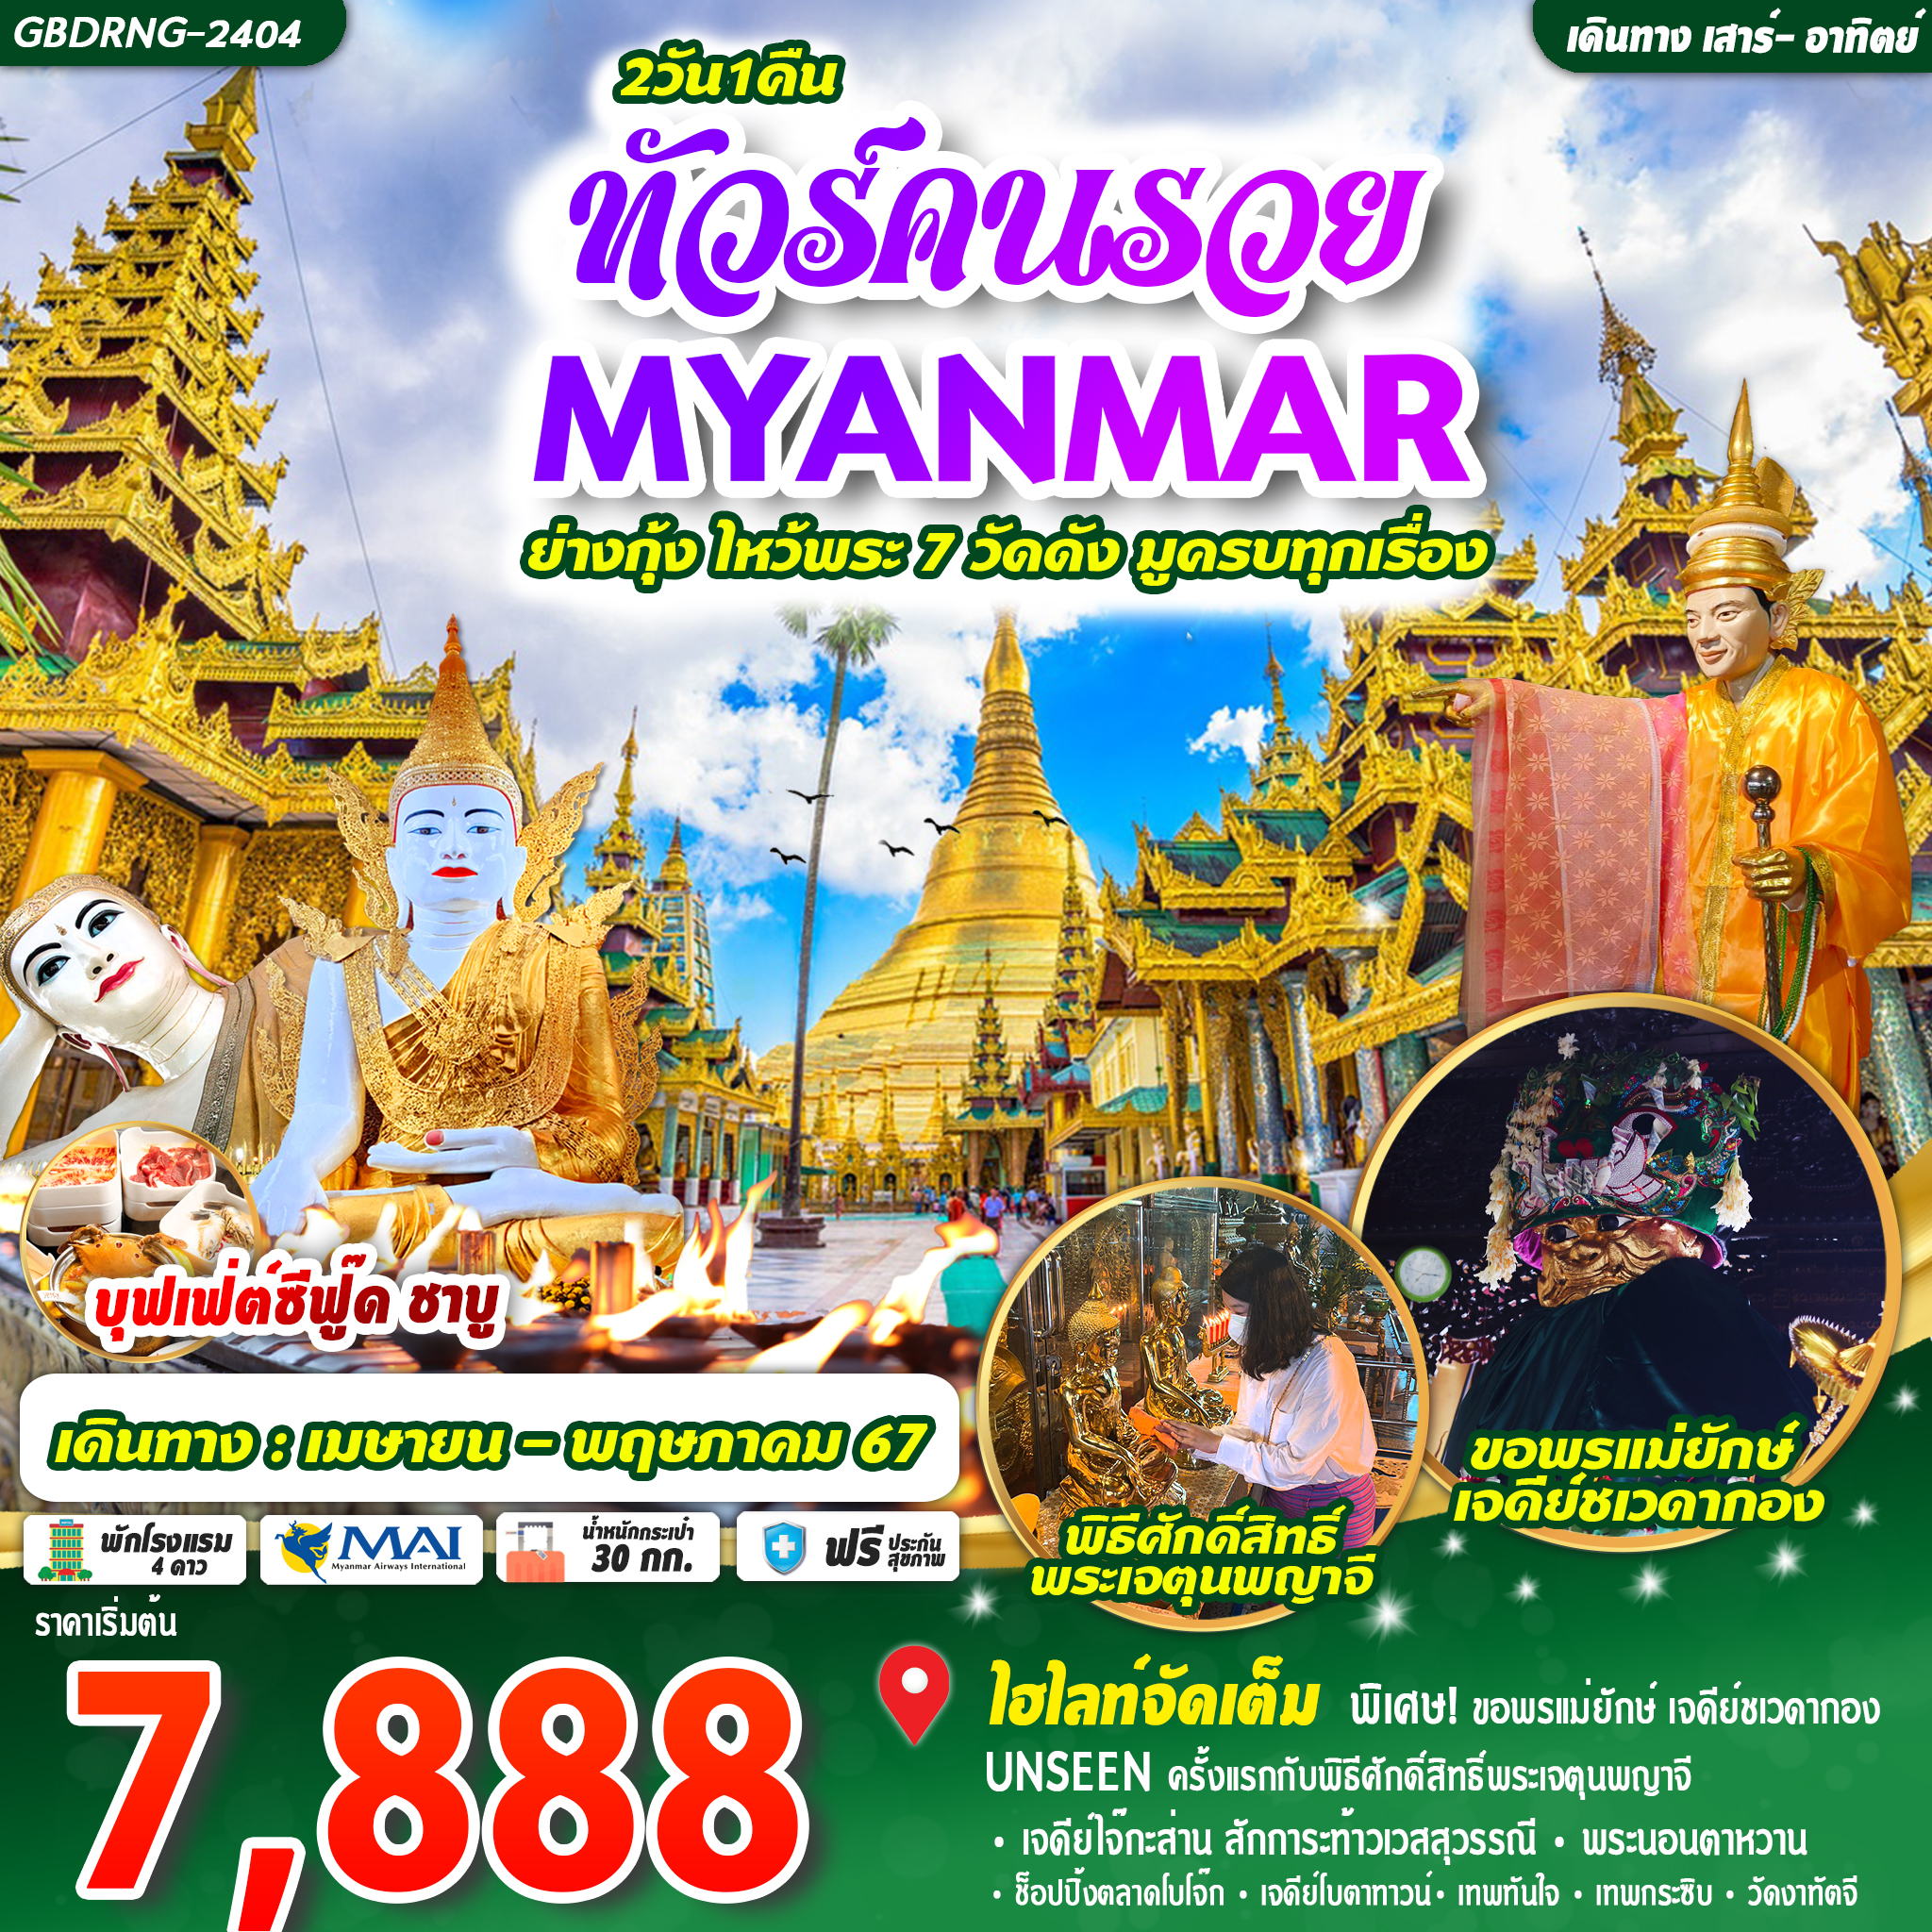 MYANMAR ย่างกุ้ง ไหว้พระ 7 วัดดัง 2D1N BY 8M